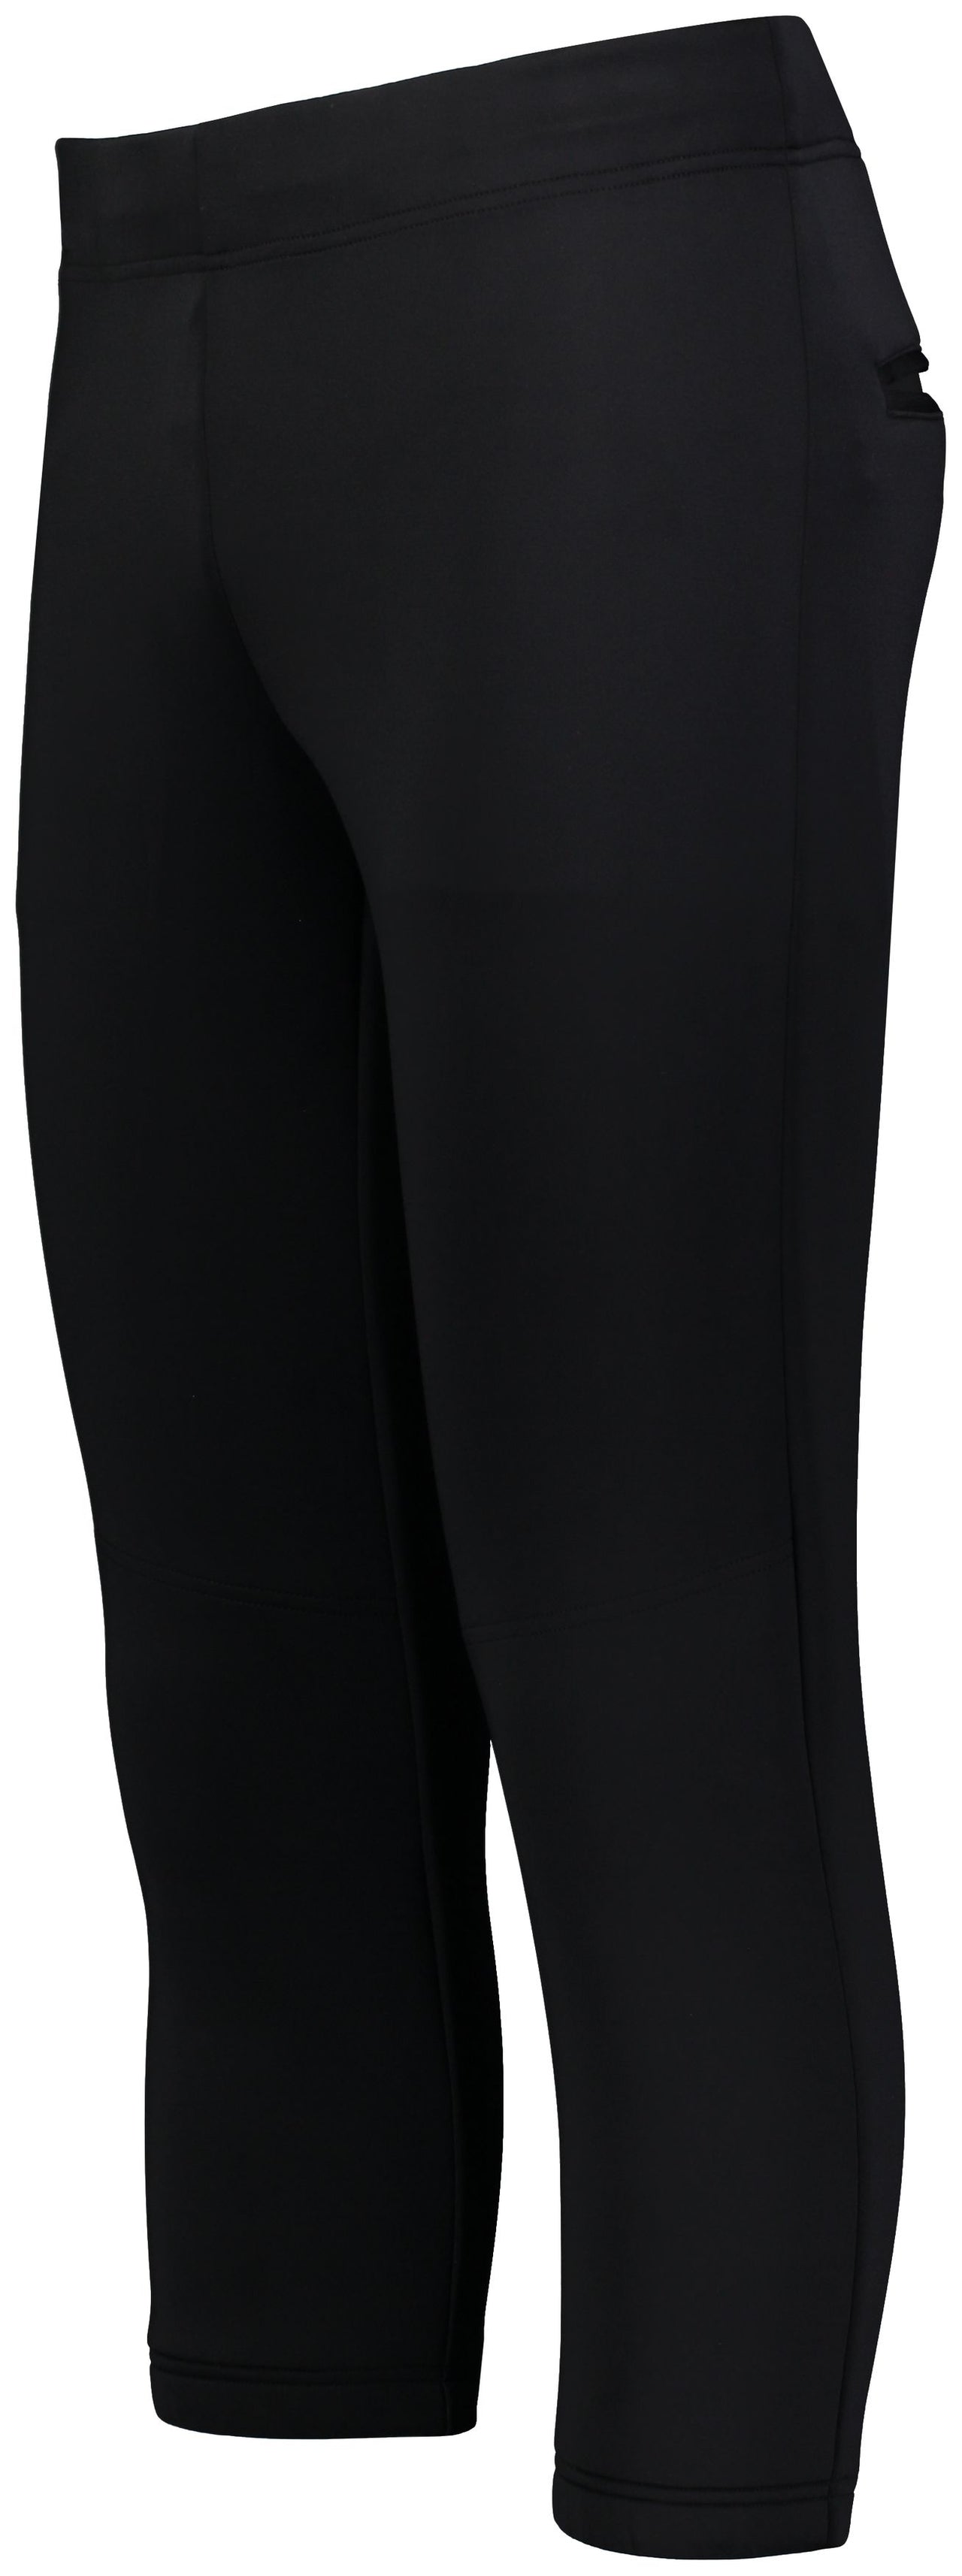 Pantalon de softball Flexstretch pour femme - R15LSX